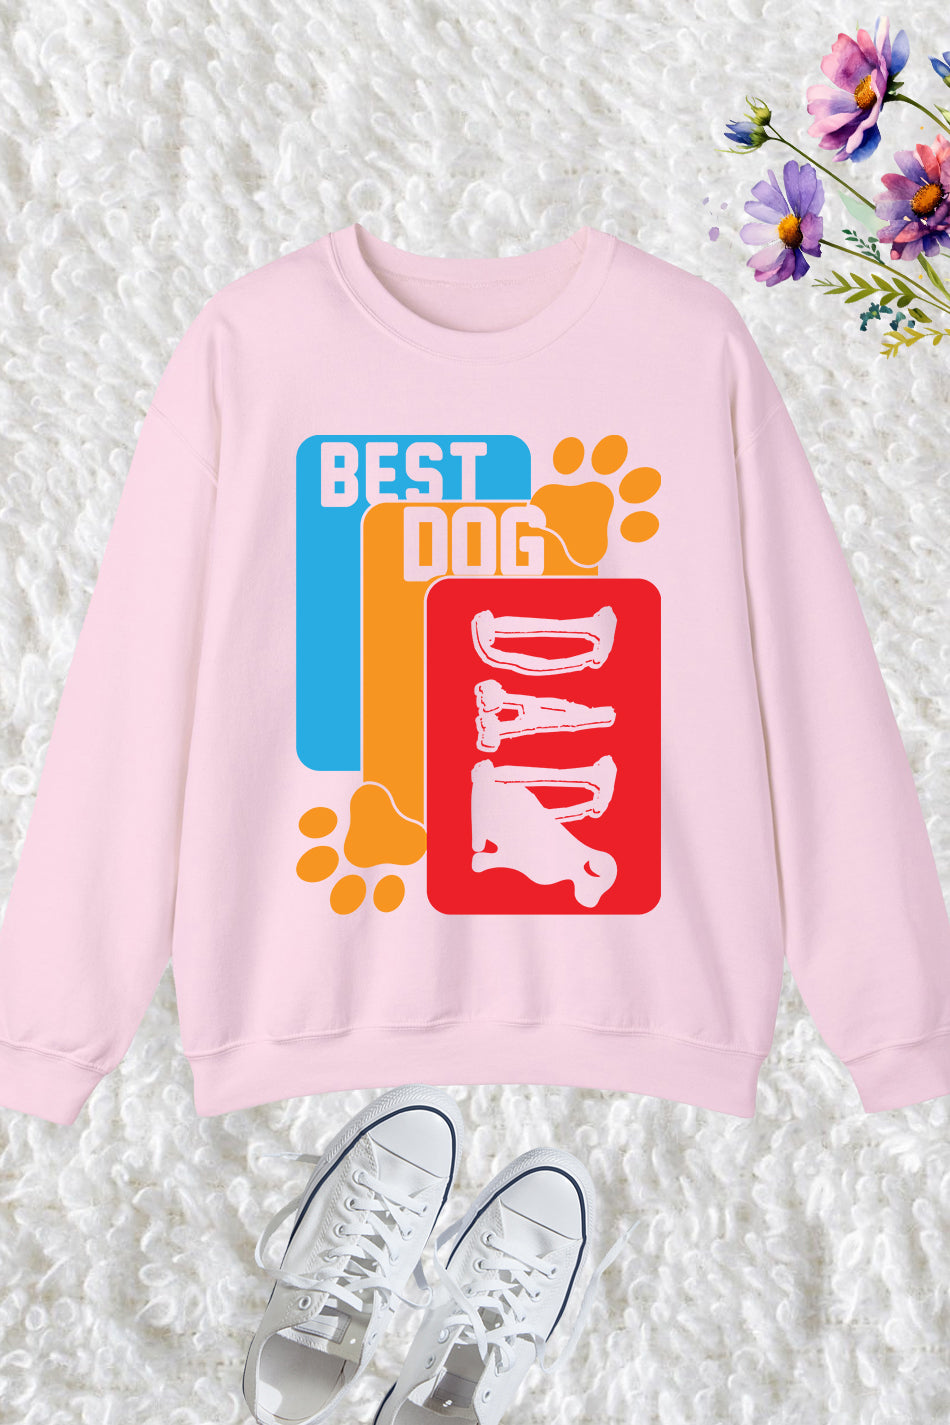 Best Dog Dad Sweatshirt